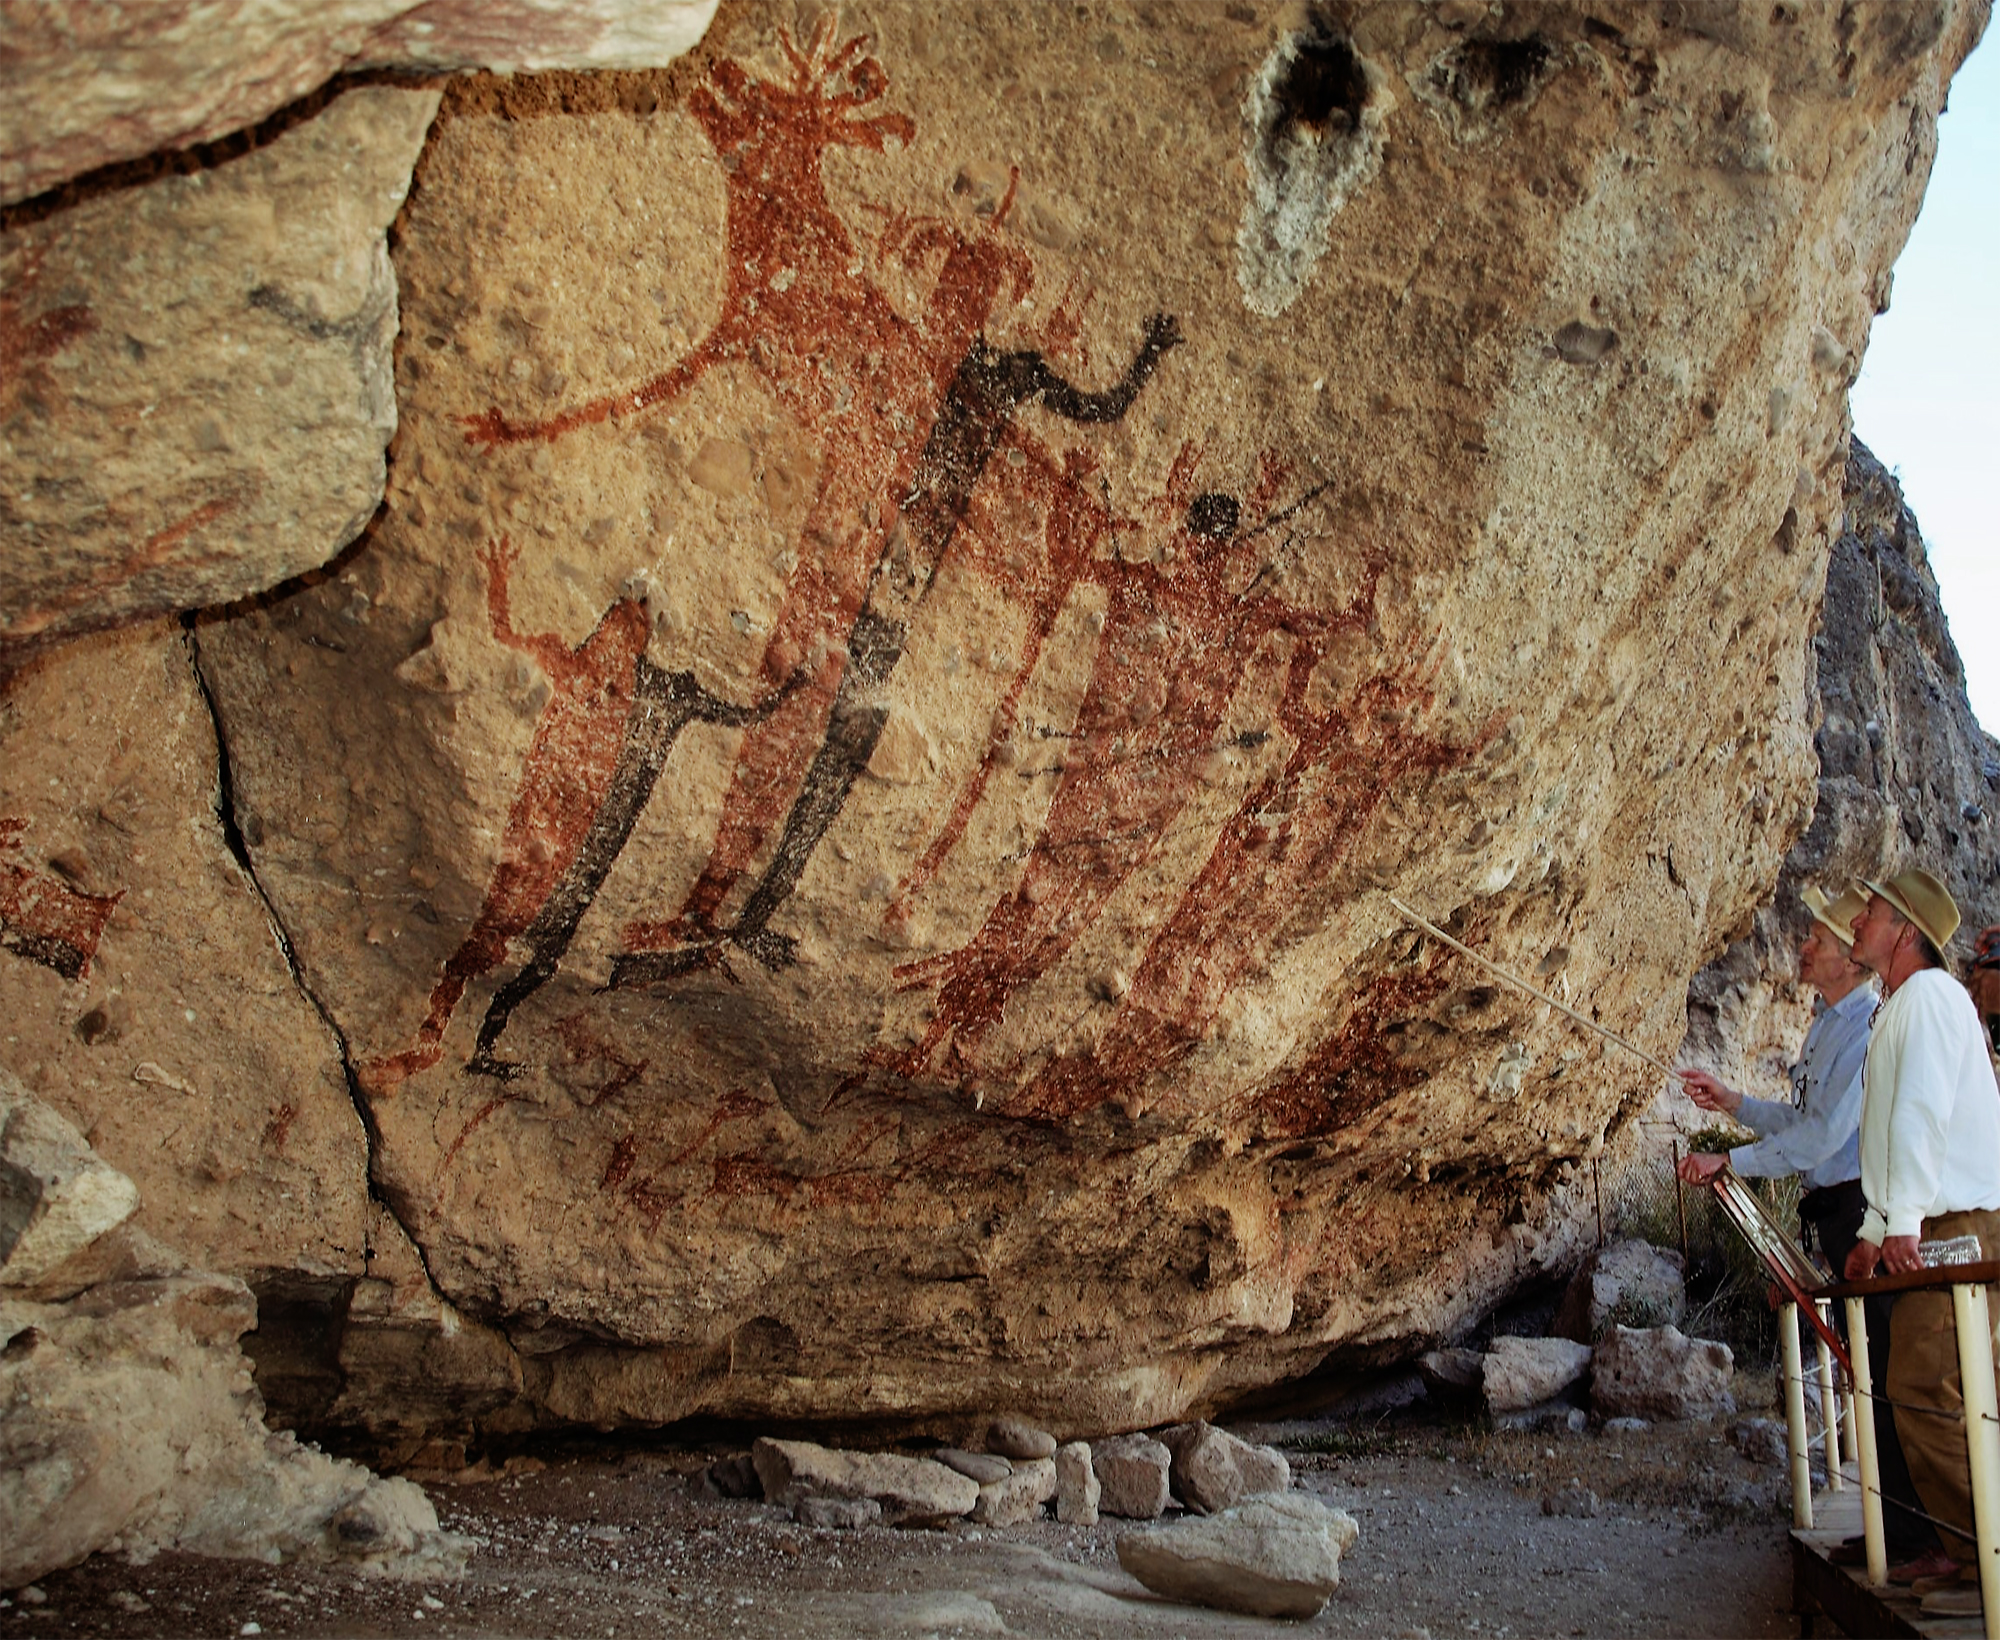 Bradshaw Foundation Baja California Peninsula Mexico California Rock Art Cave Paintings